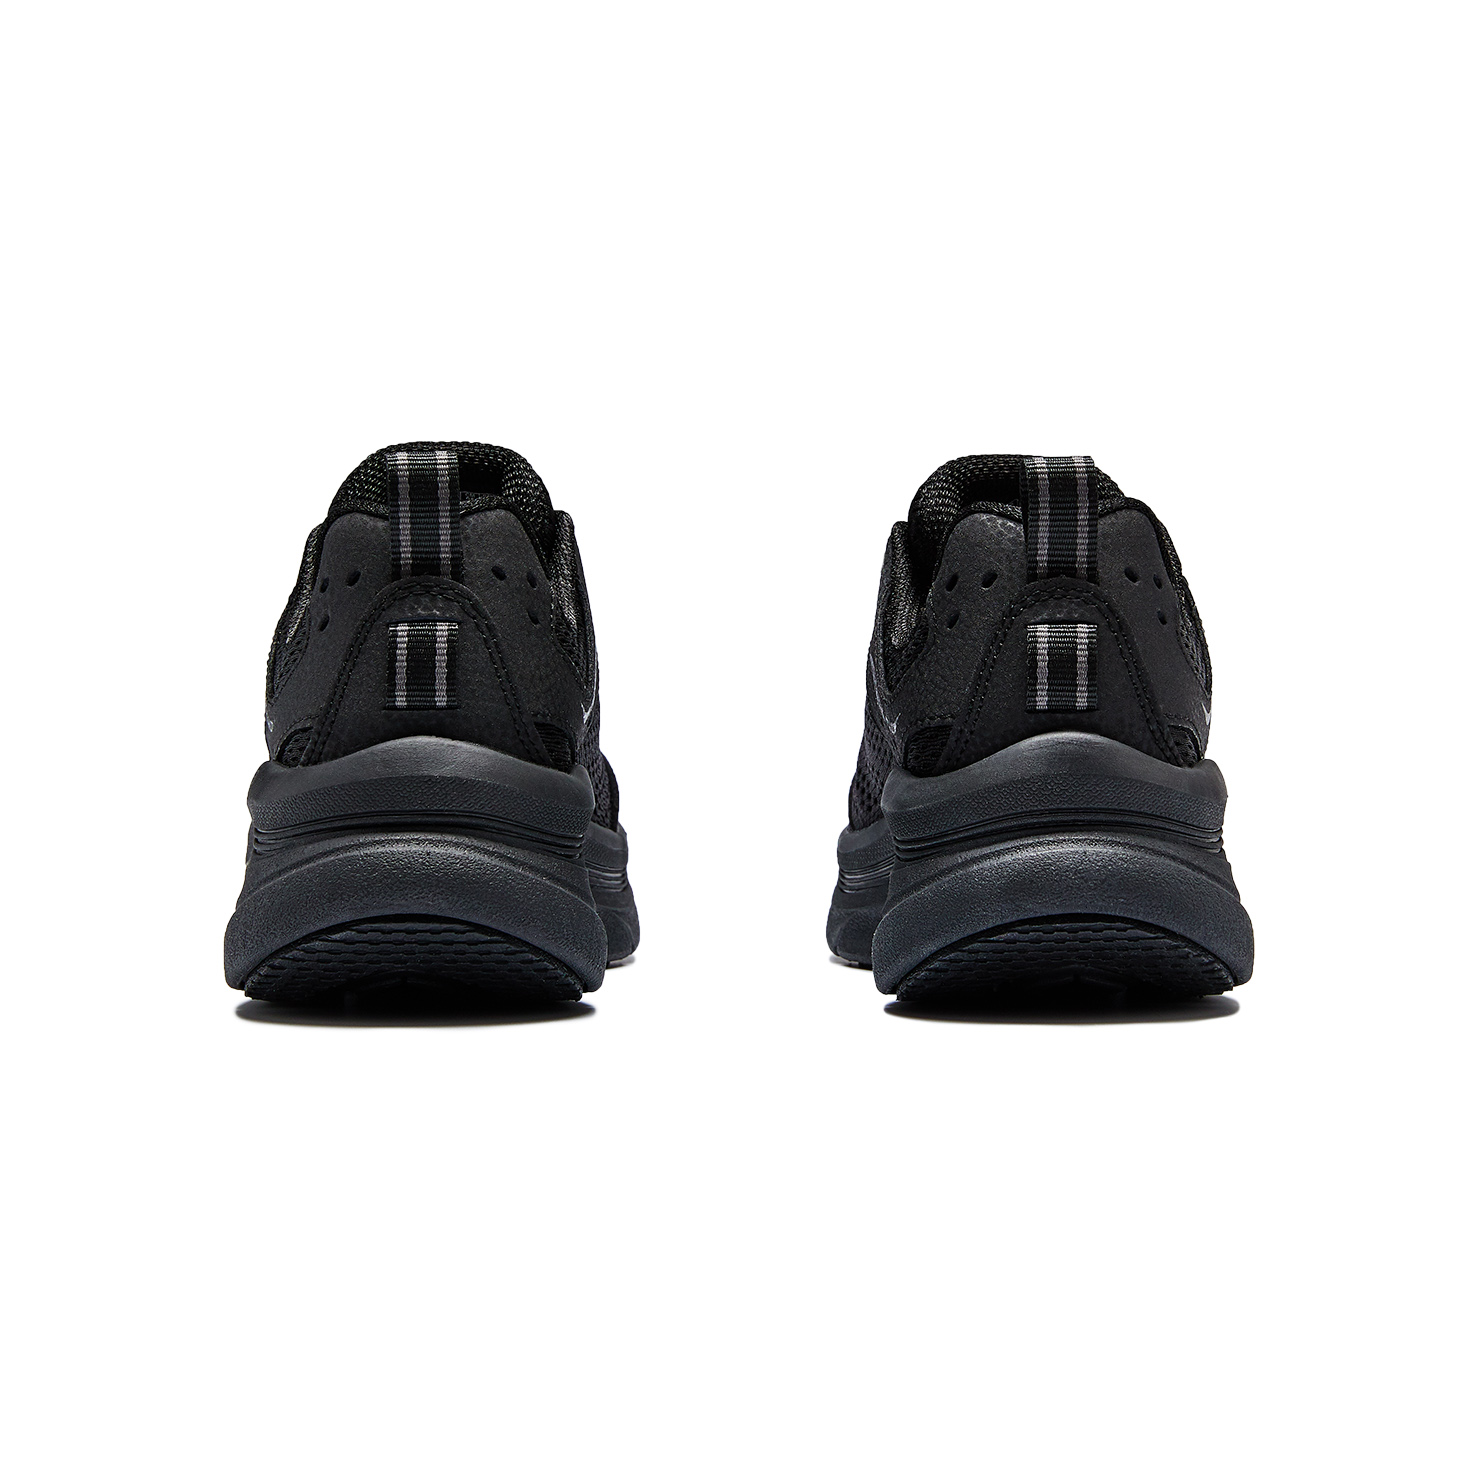 D'LUX WALKER SKECHERS, размер 36, цвет черный SK149023 - фото 4